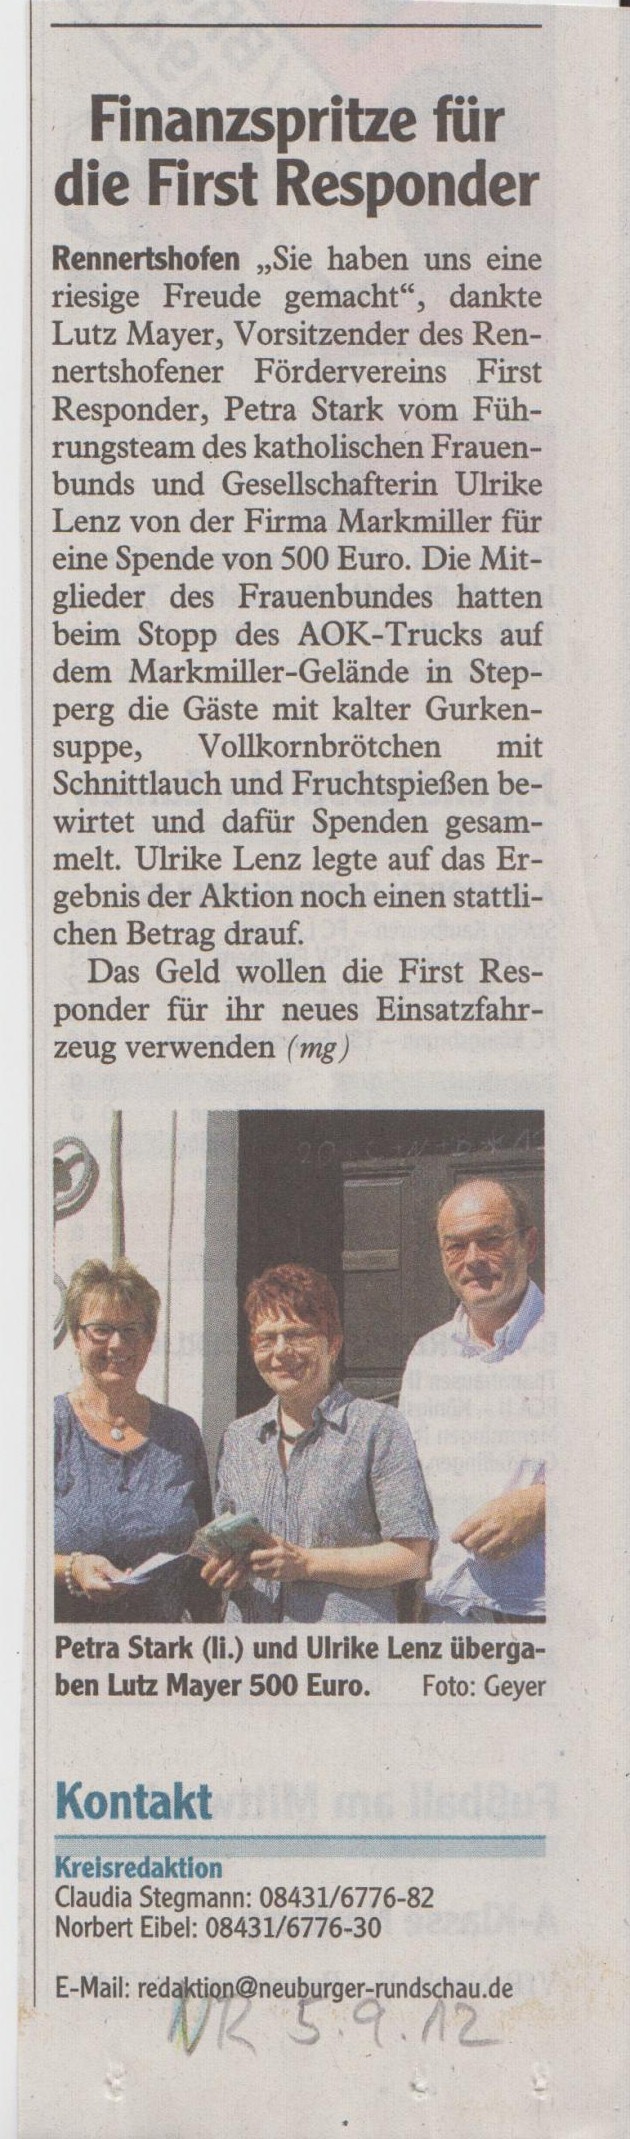 Neuburger Rundschau vom 5.9.2012